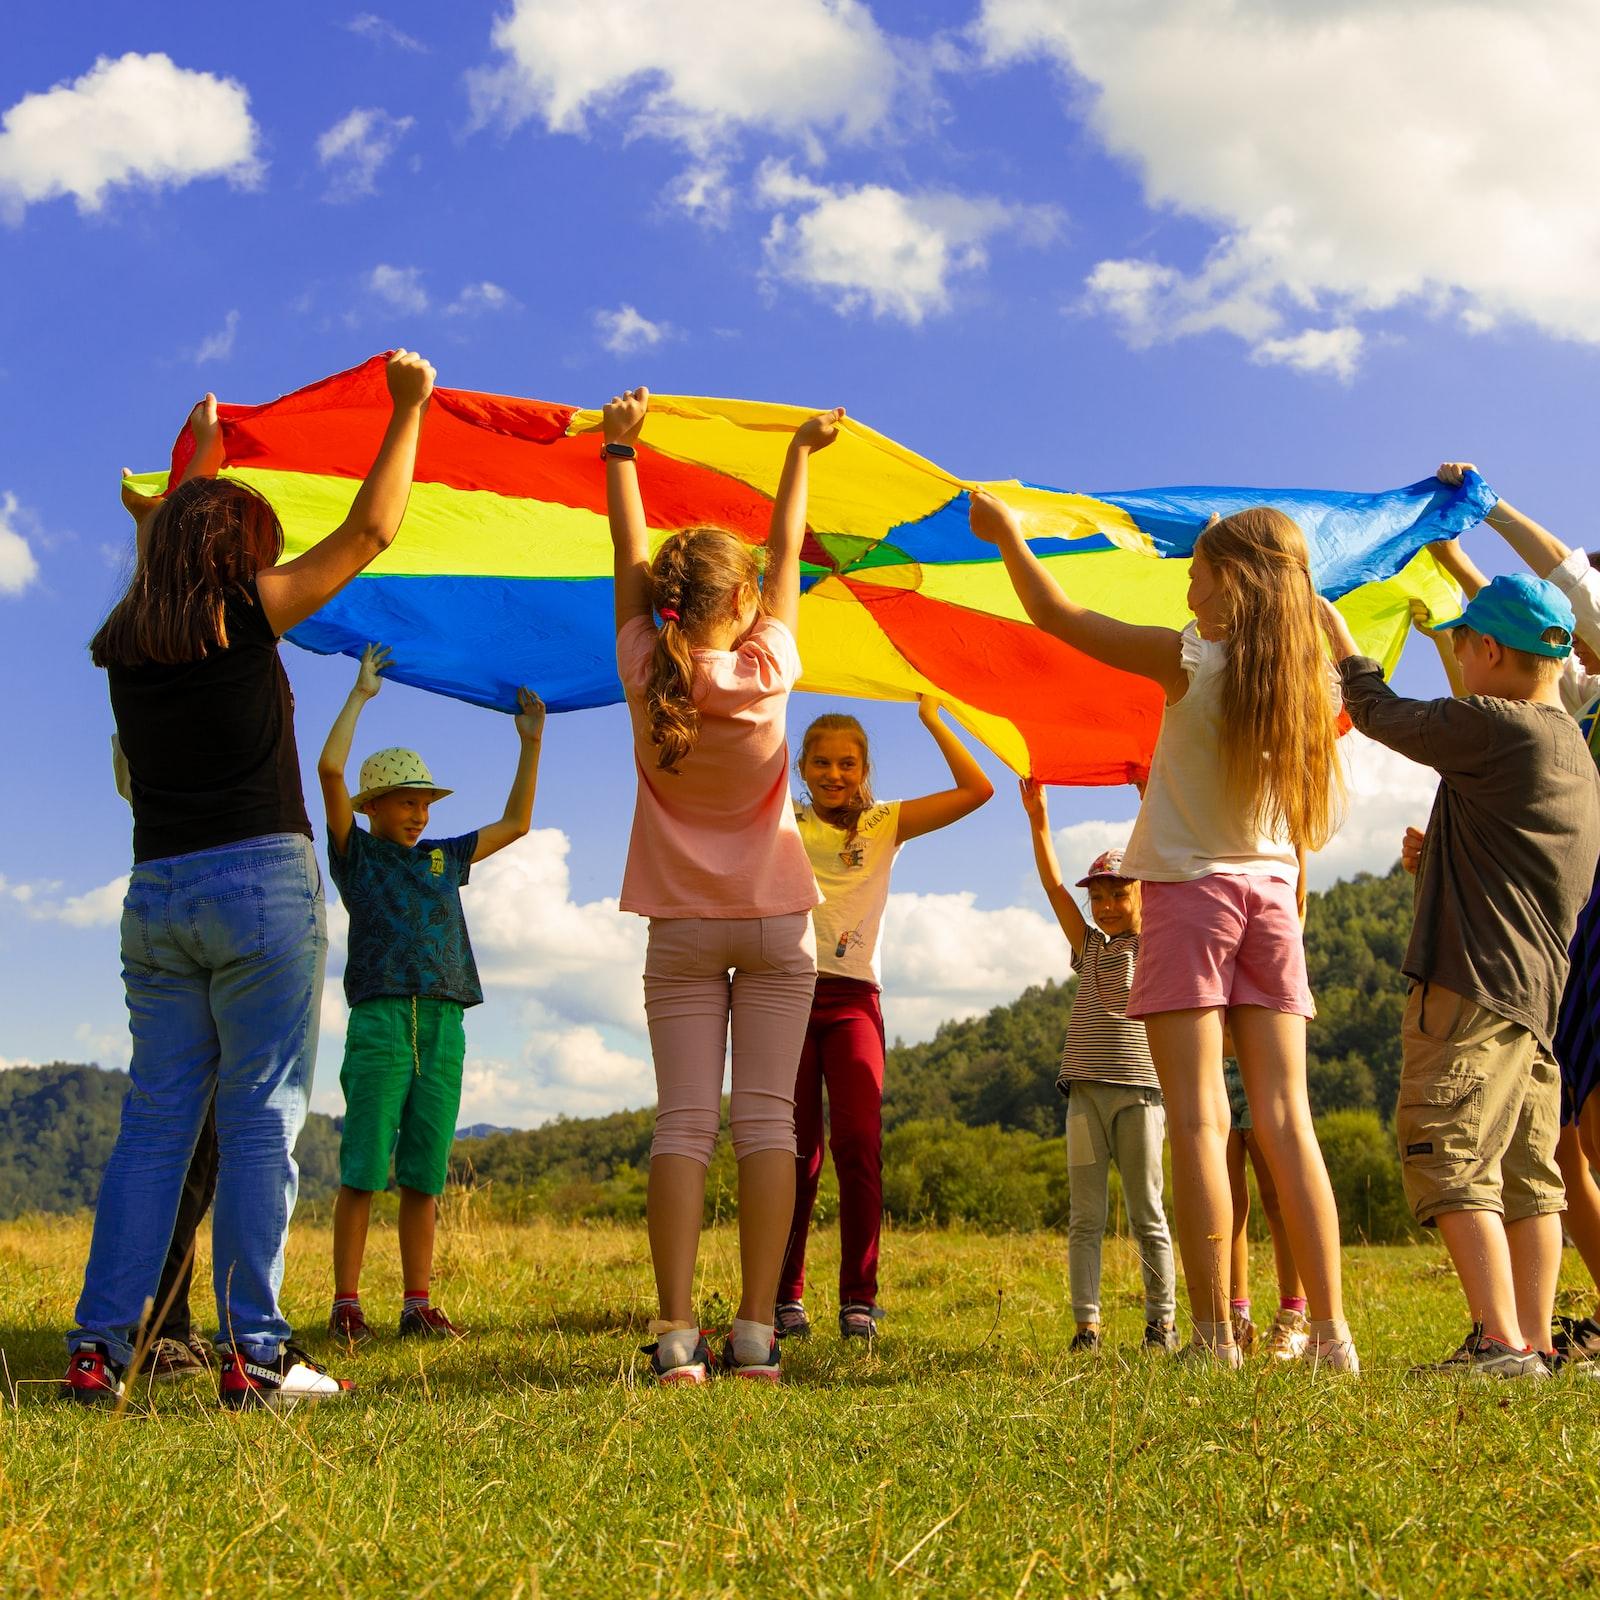 Eine Gruppe Kinder hält ein buntes 'Schwungtuch' in die Luft. Sie stehen auf einer Wiese. Der Himmel ist blau-weiß bewölkt